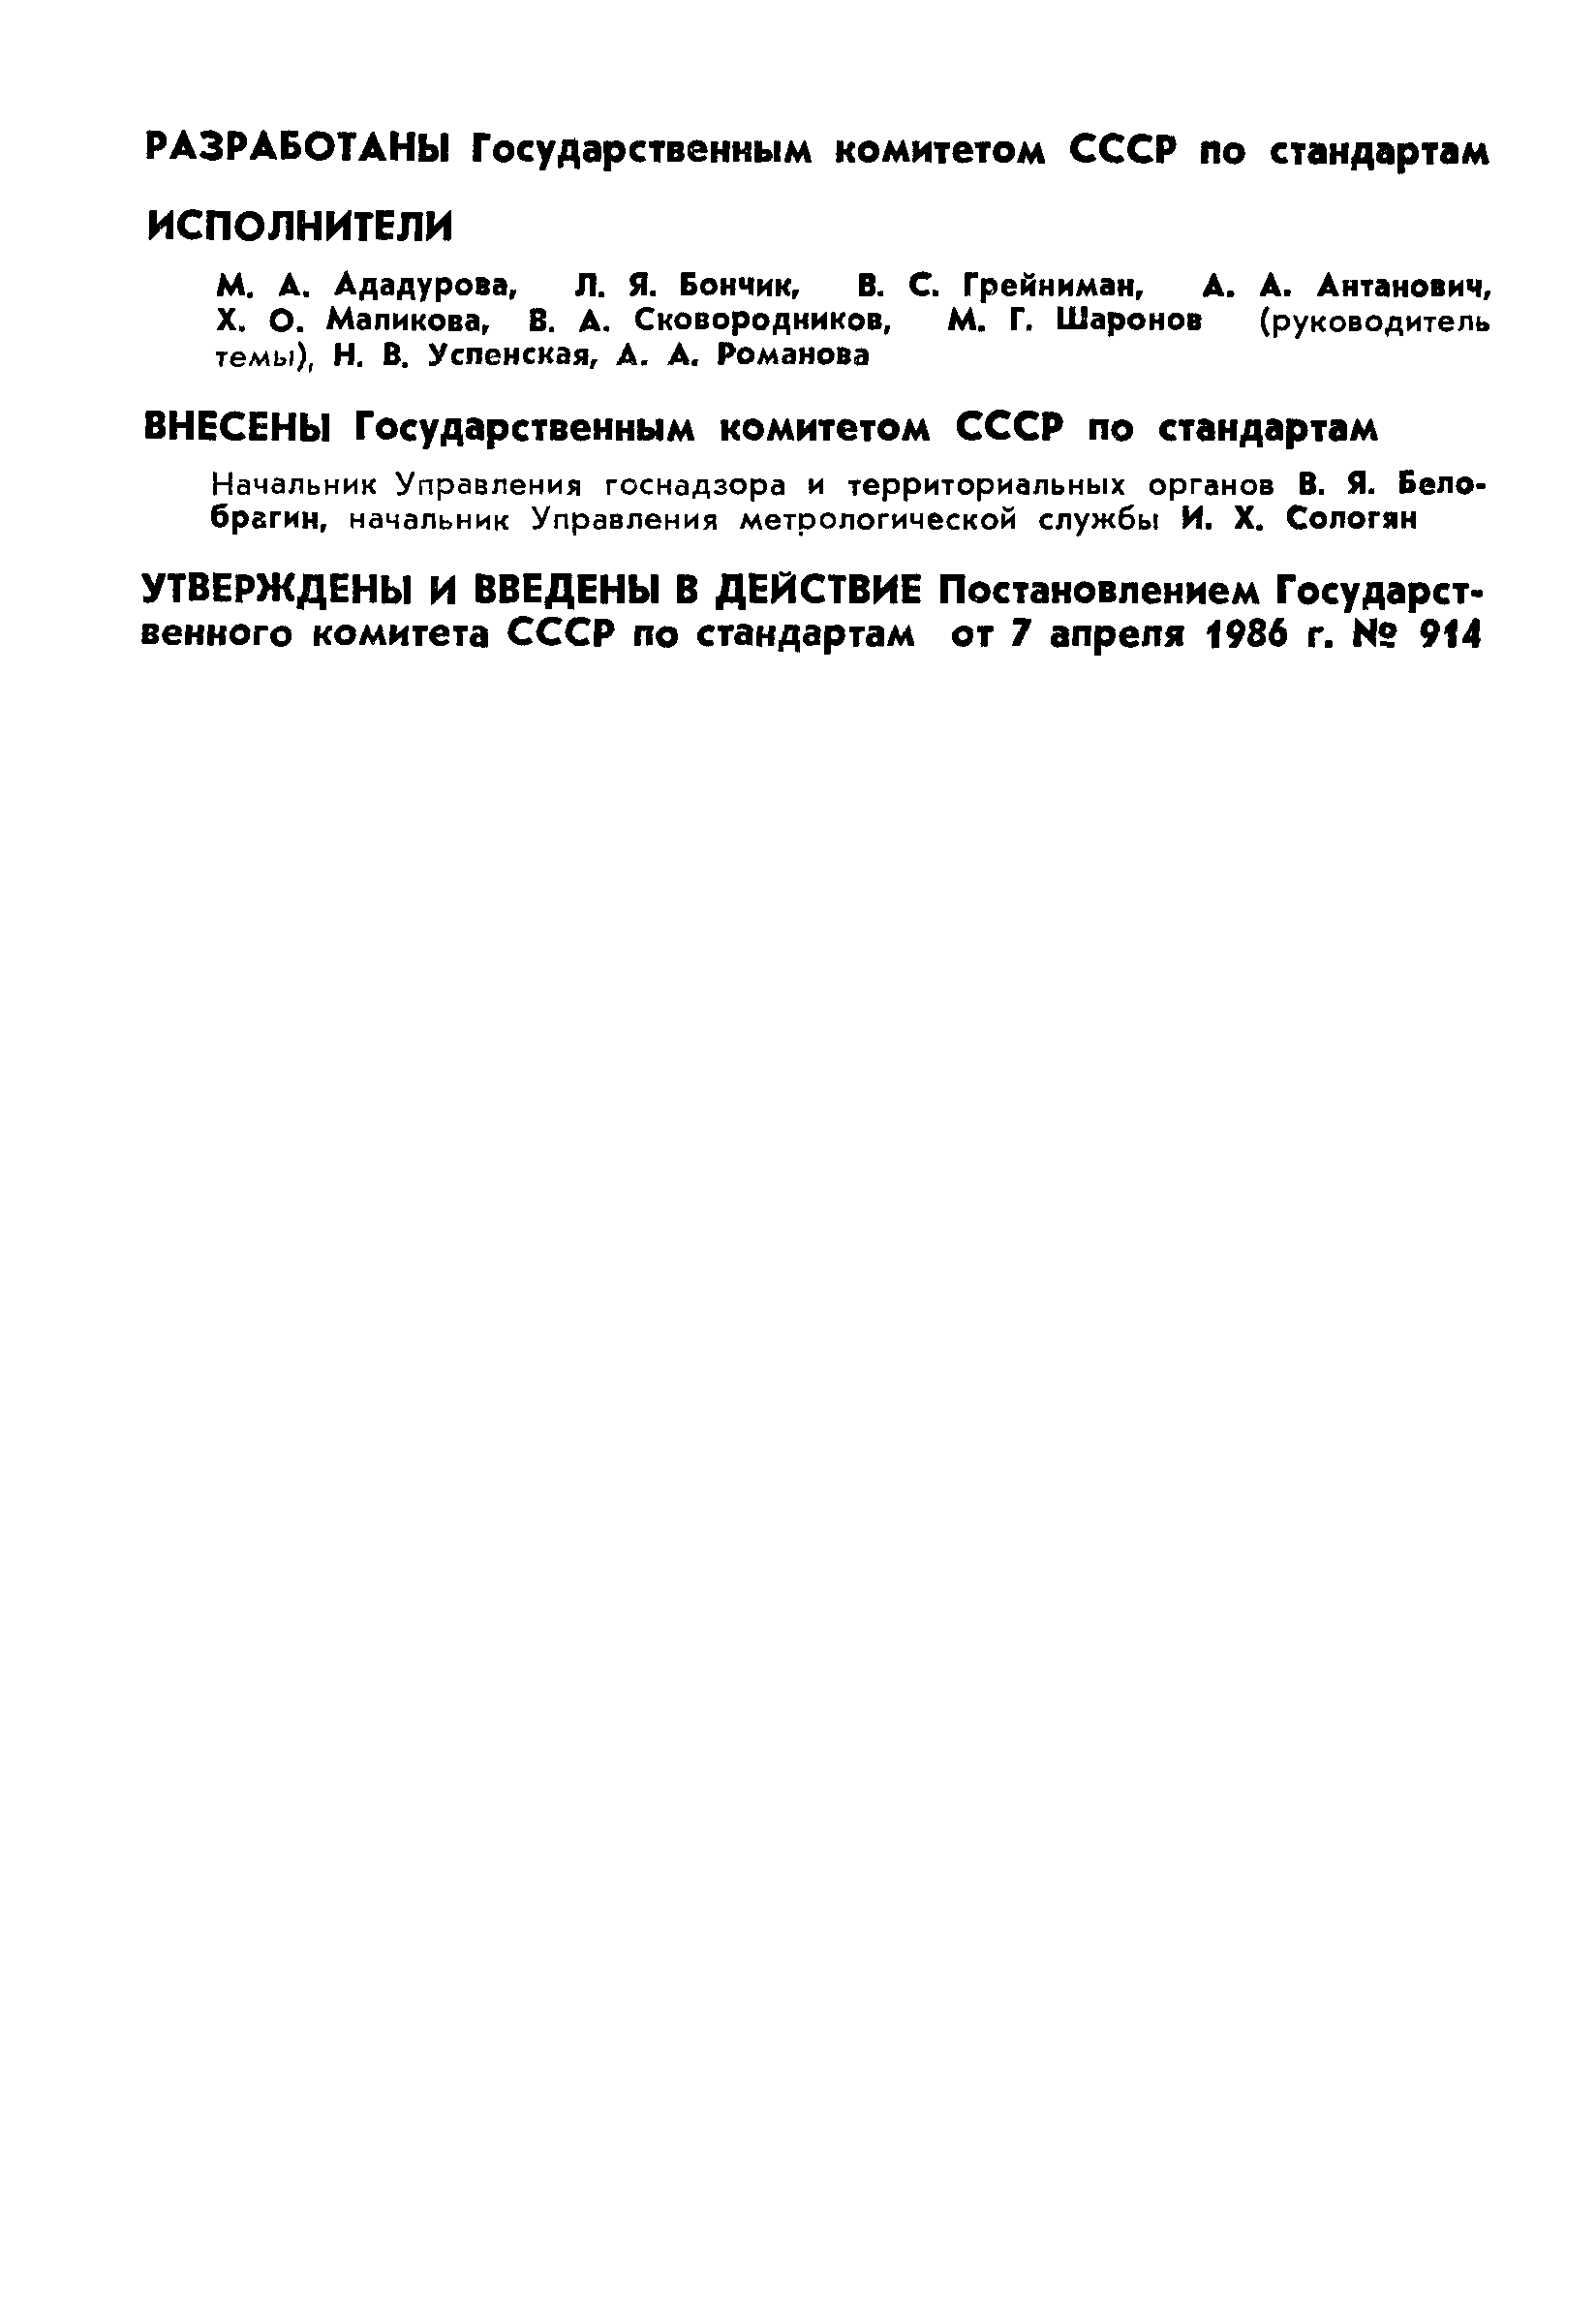 РД 50-89-86